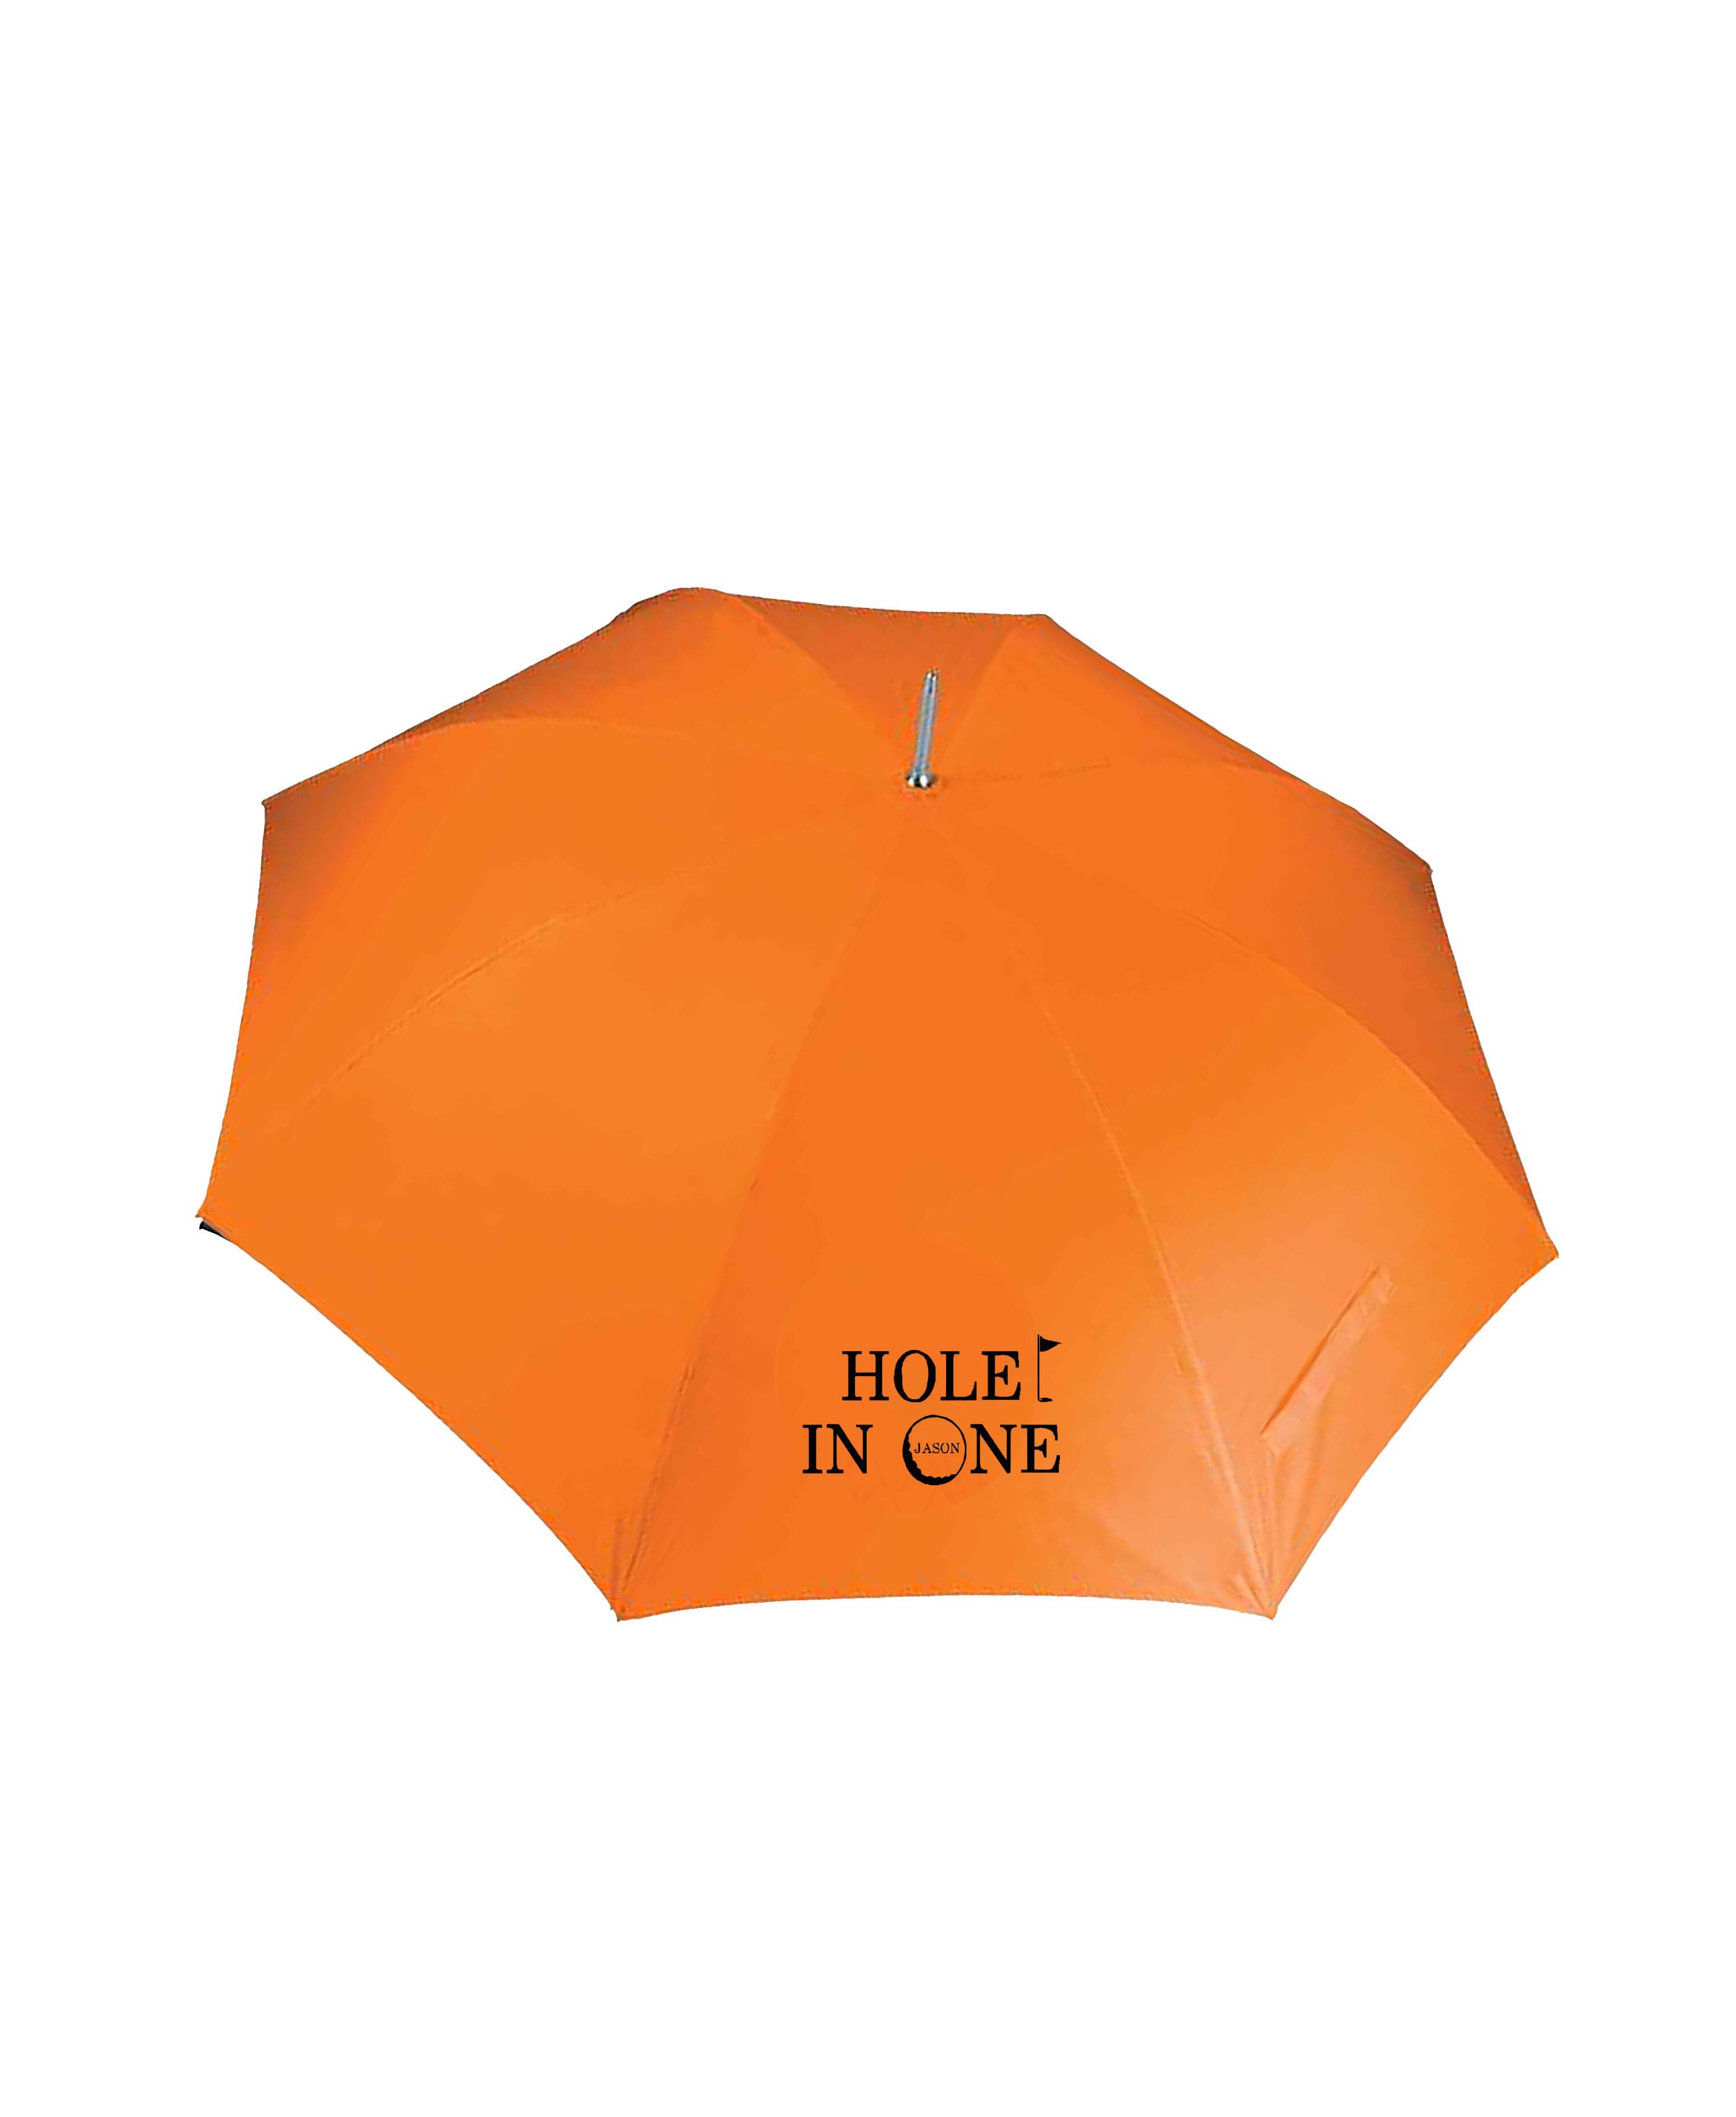 Hole in 1 Design Large Golf Umbrella Orange